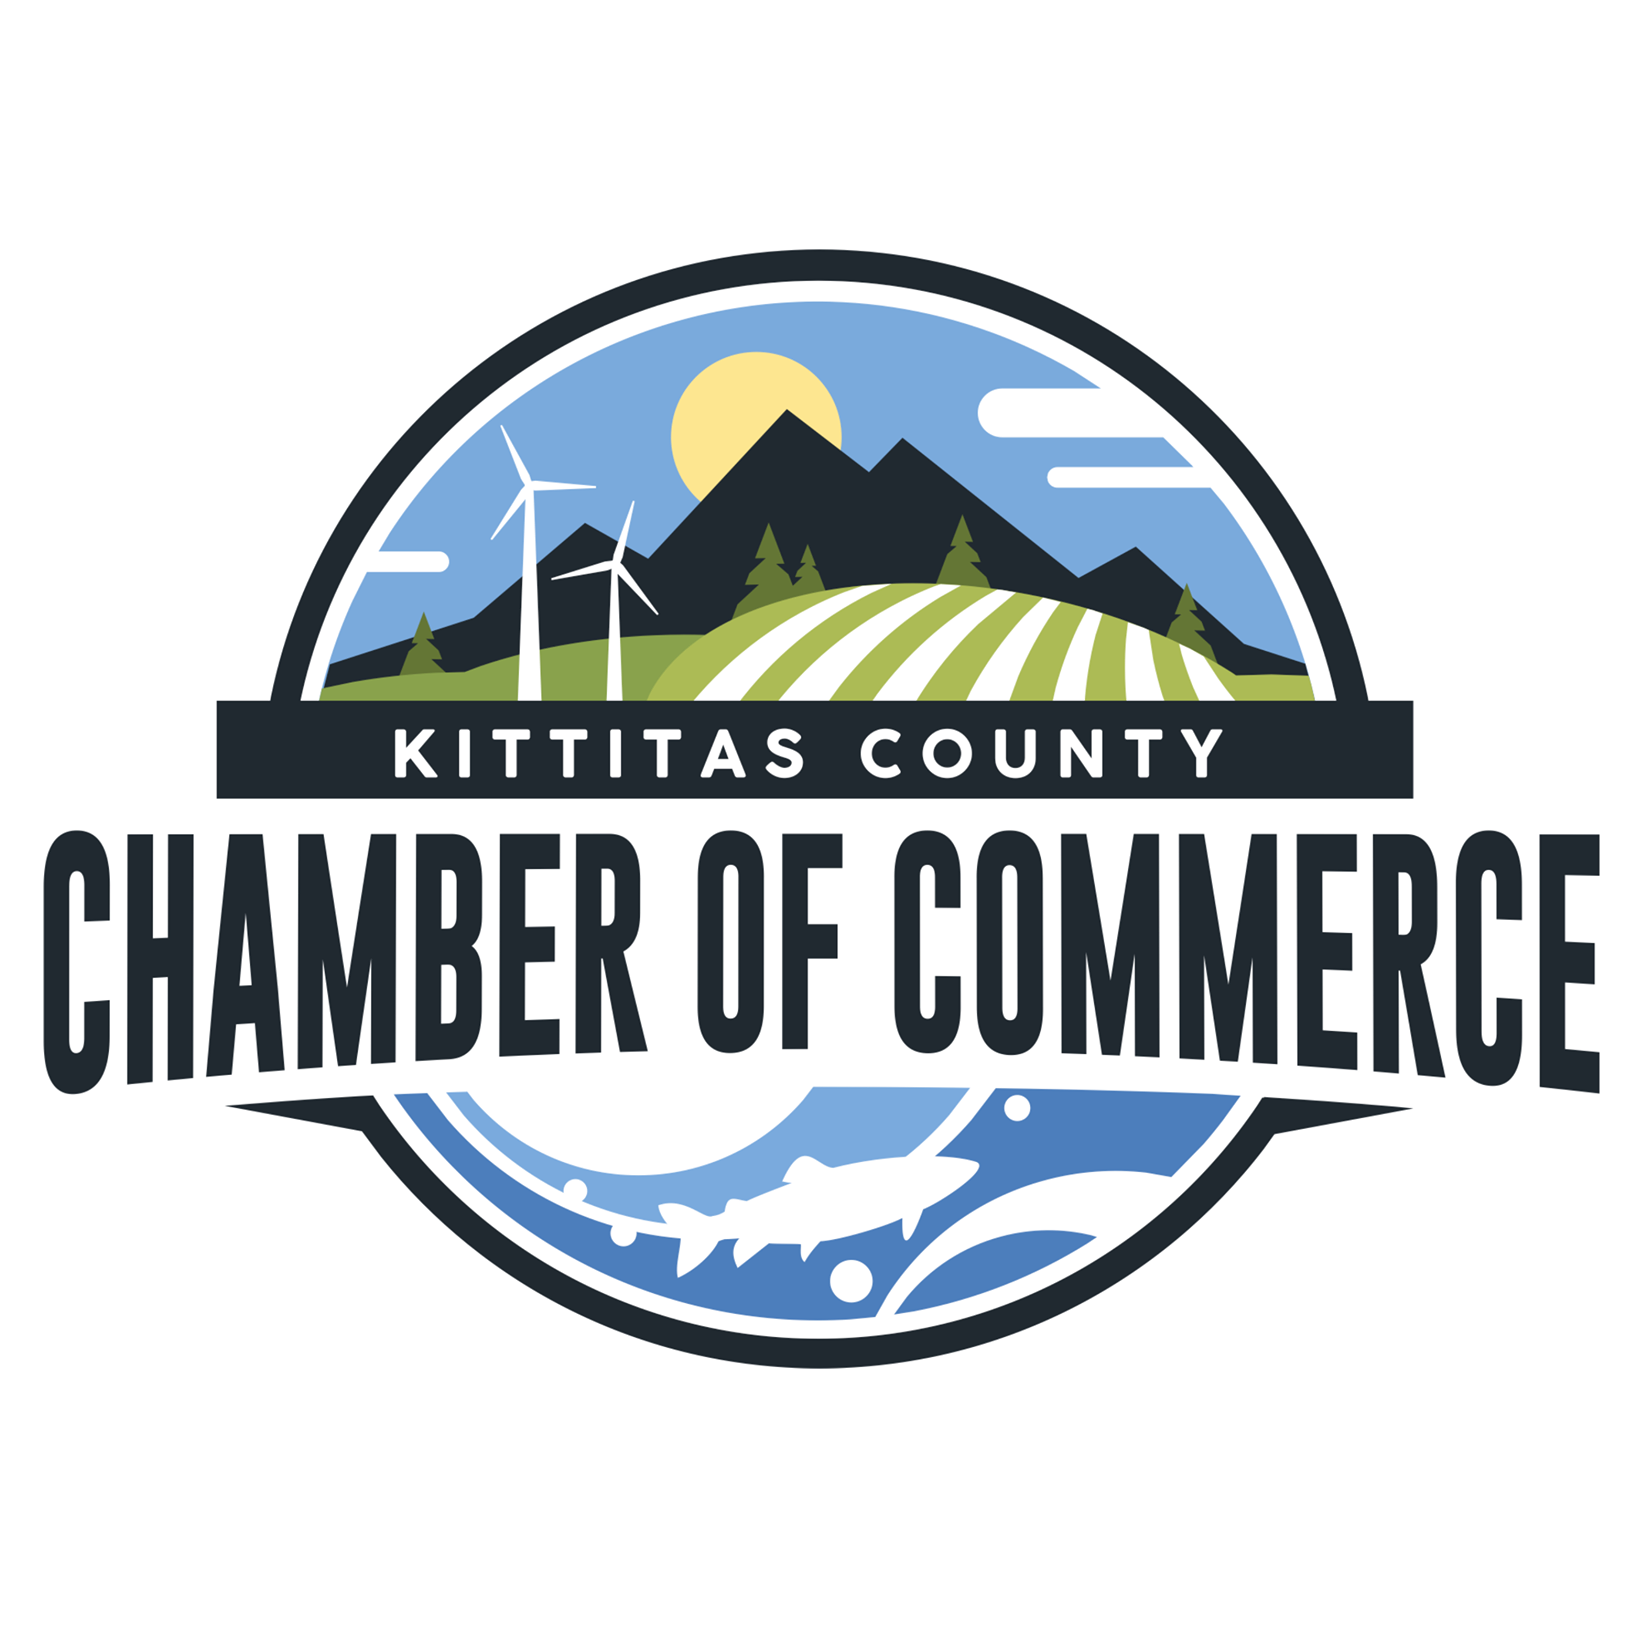 Kittitas County Chamber of Commerce logo